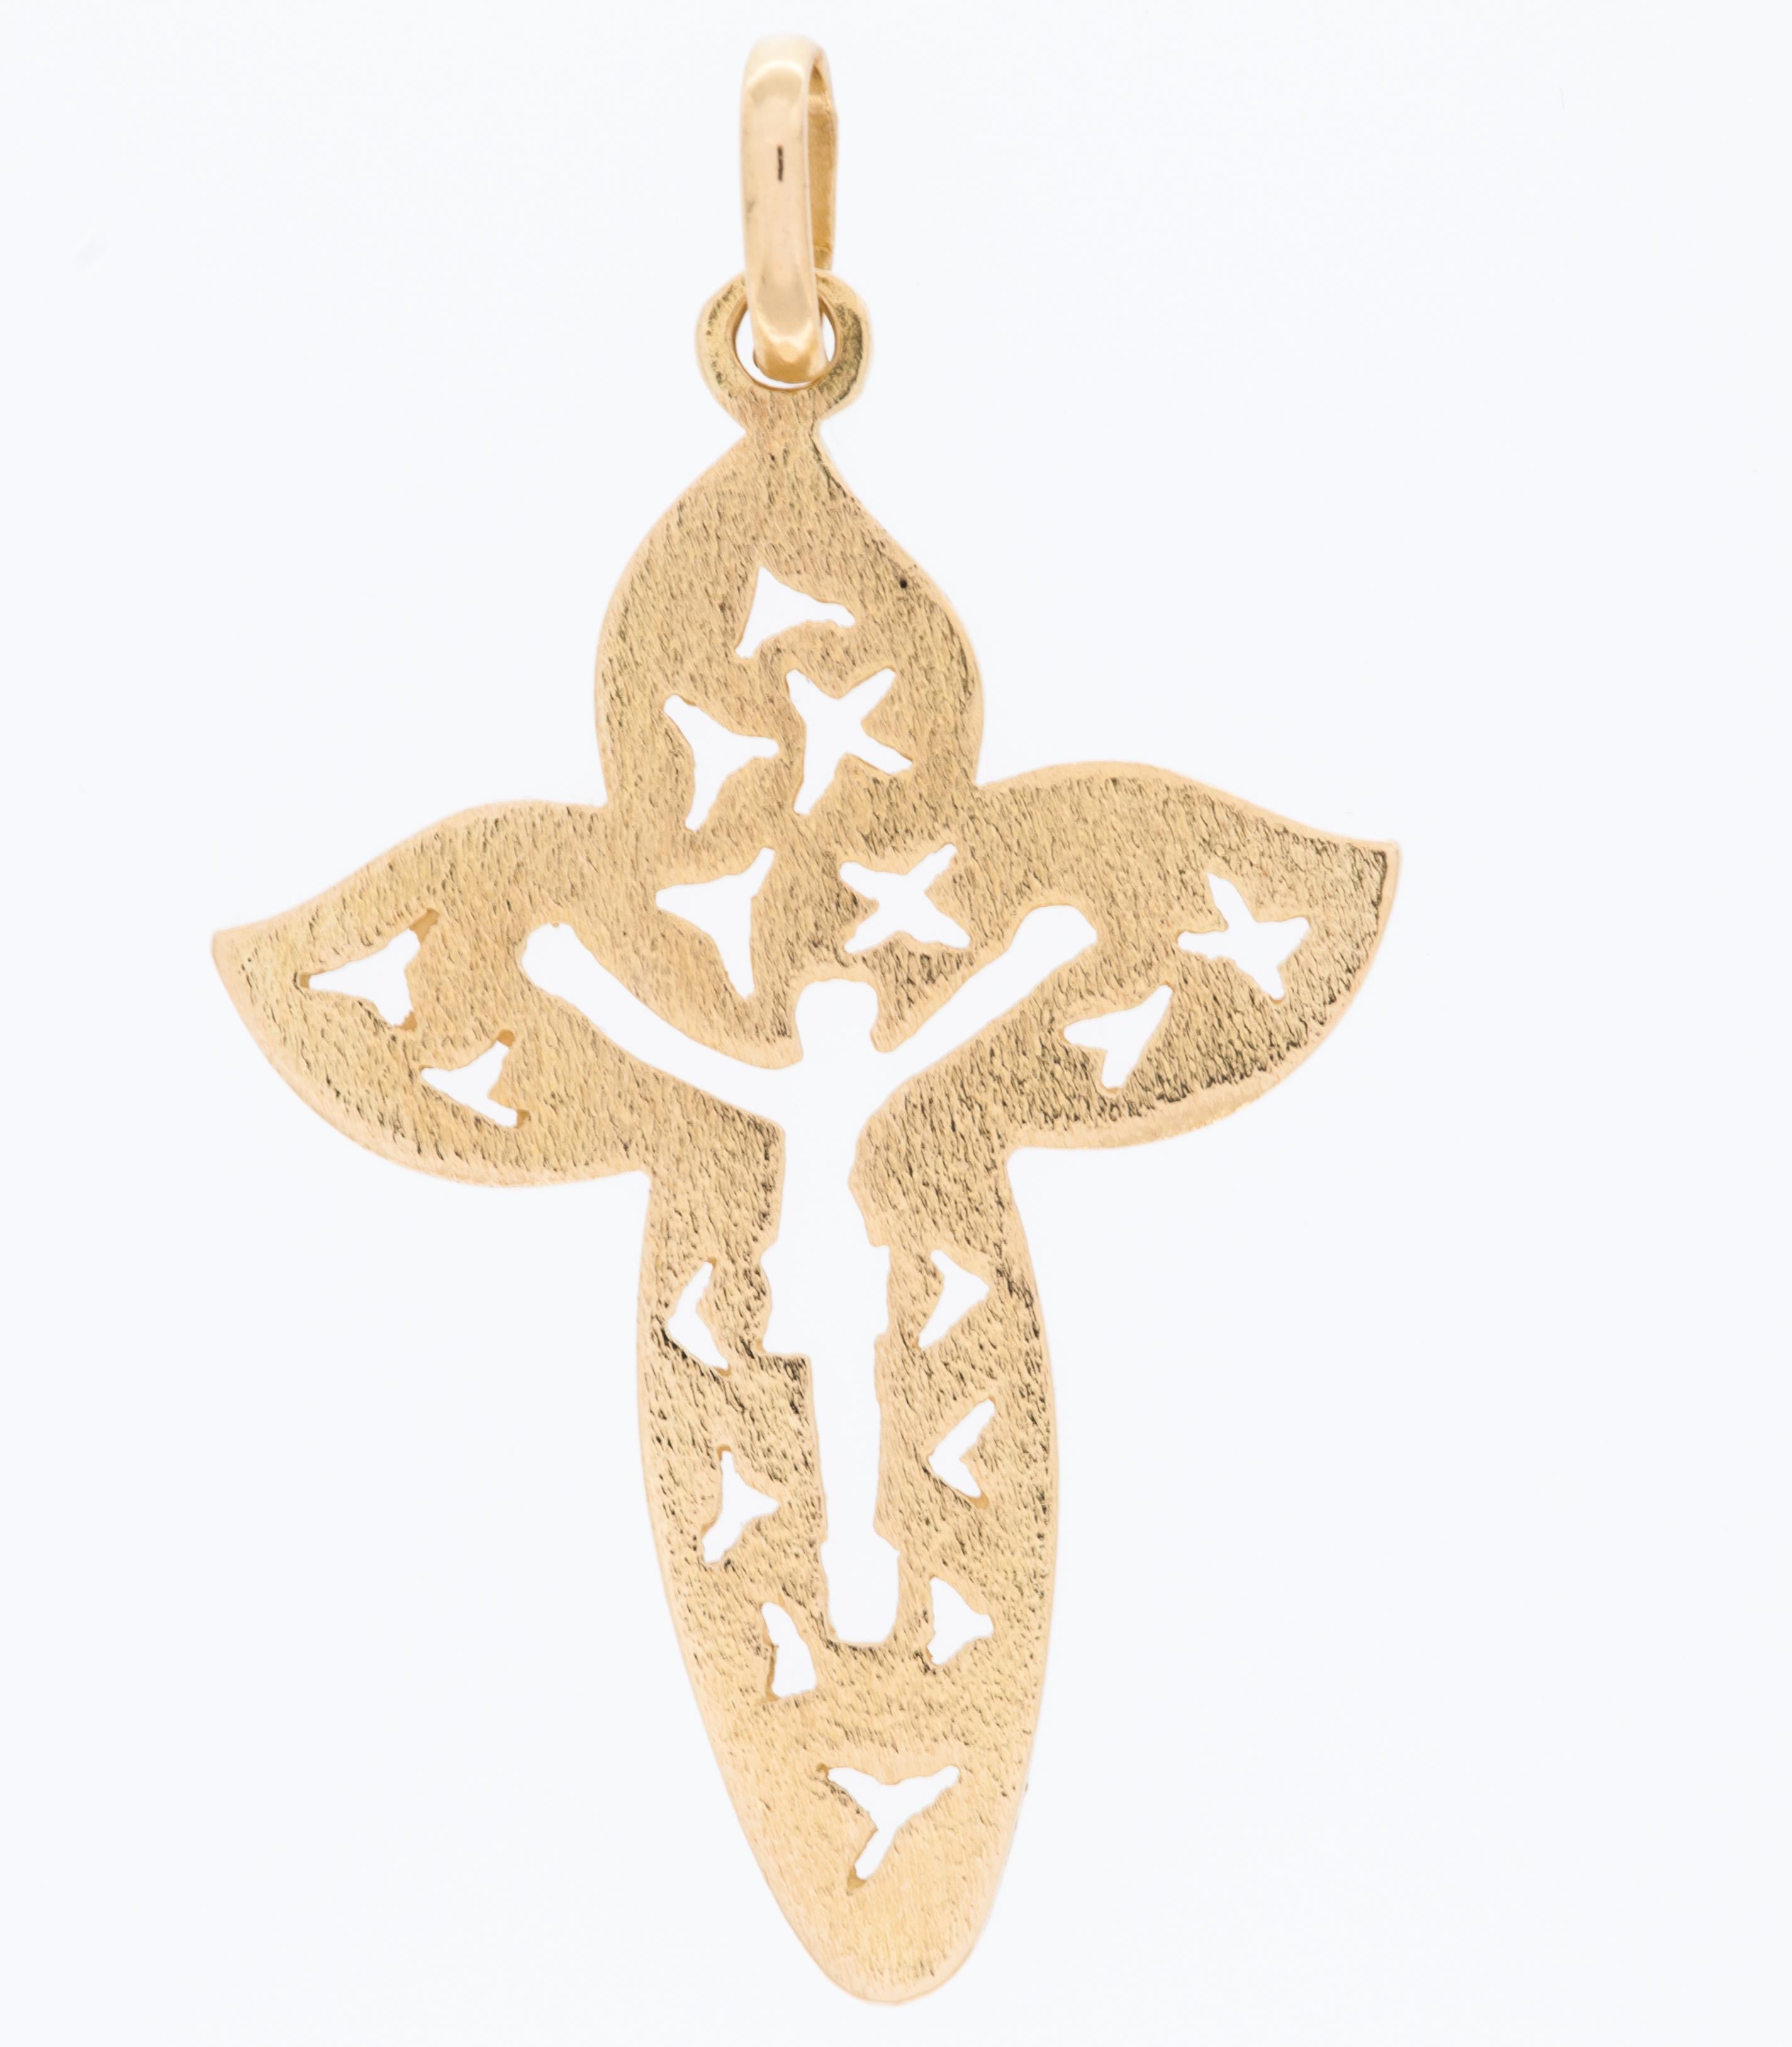 La croix satinée italienne en or jaune 18 carats est un bijou religieux symbolique de grande qualité. Cet élégant pendentif en forme de croix est fabriqué en or jaune 18 carats de haute qualité, ce qui lui confère un aspect riche et luxueux.

La